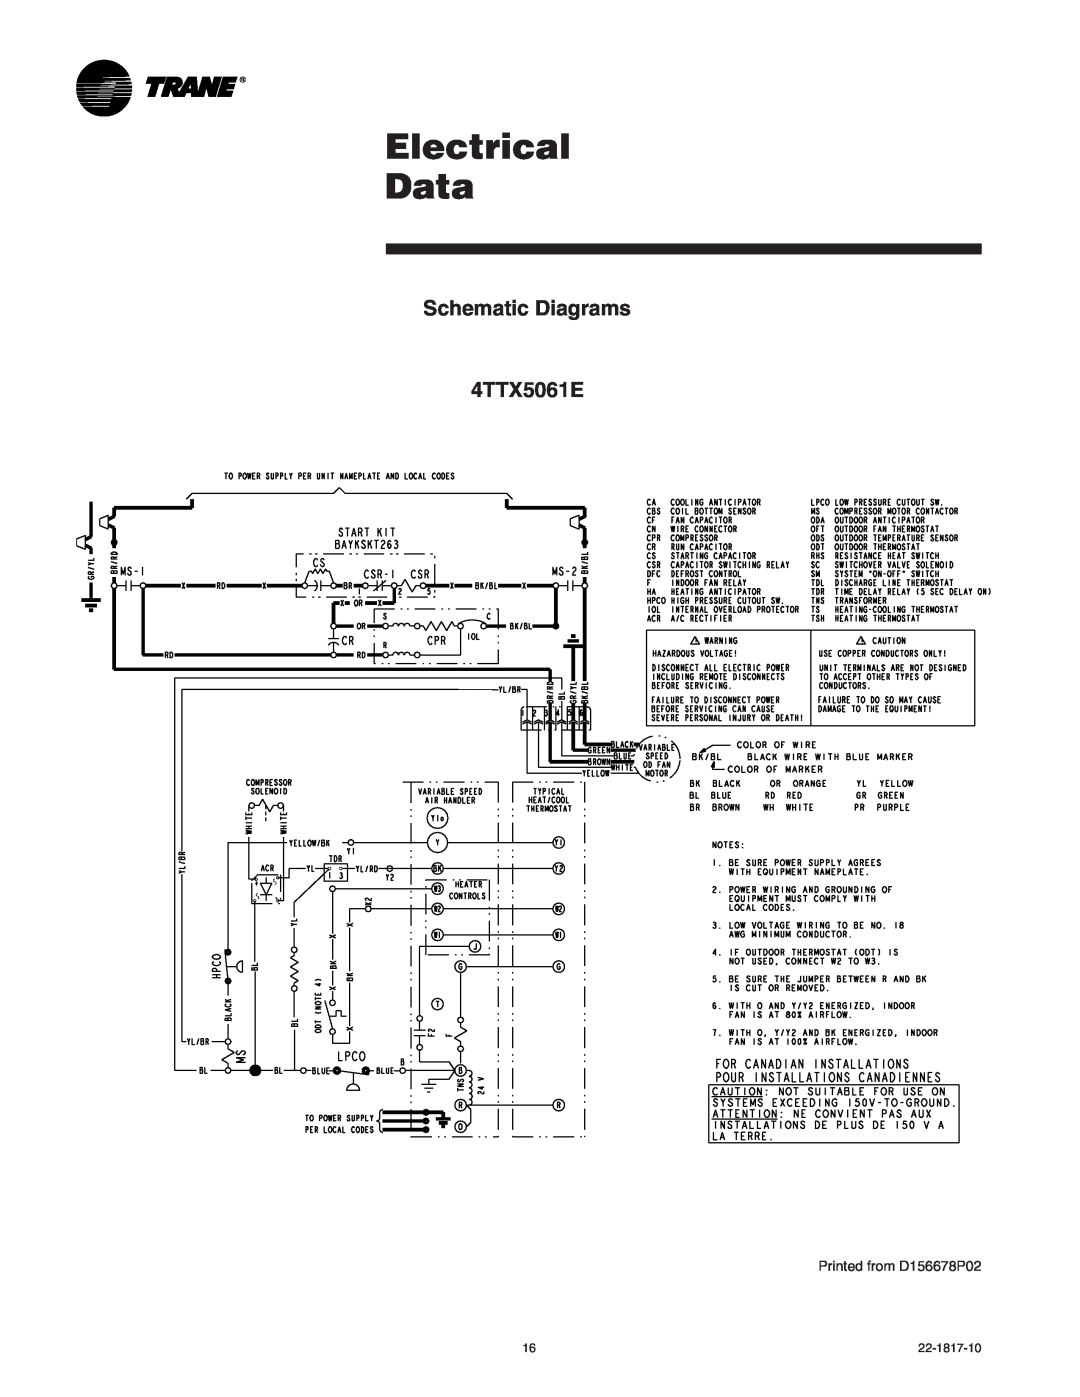 Trane 4TTX5030A1, 4TTX5060A1, 4TTX5036A1, 4TTX5042A1 Electrical Data, Schematic Diagrams 4TTX5061E, Printed from D156678P02 